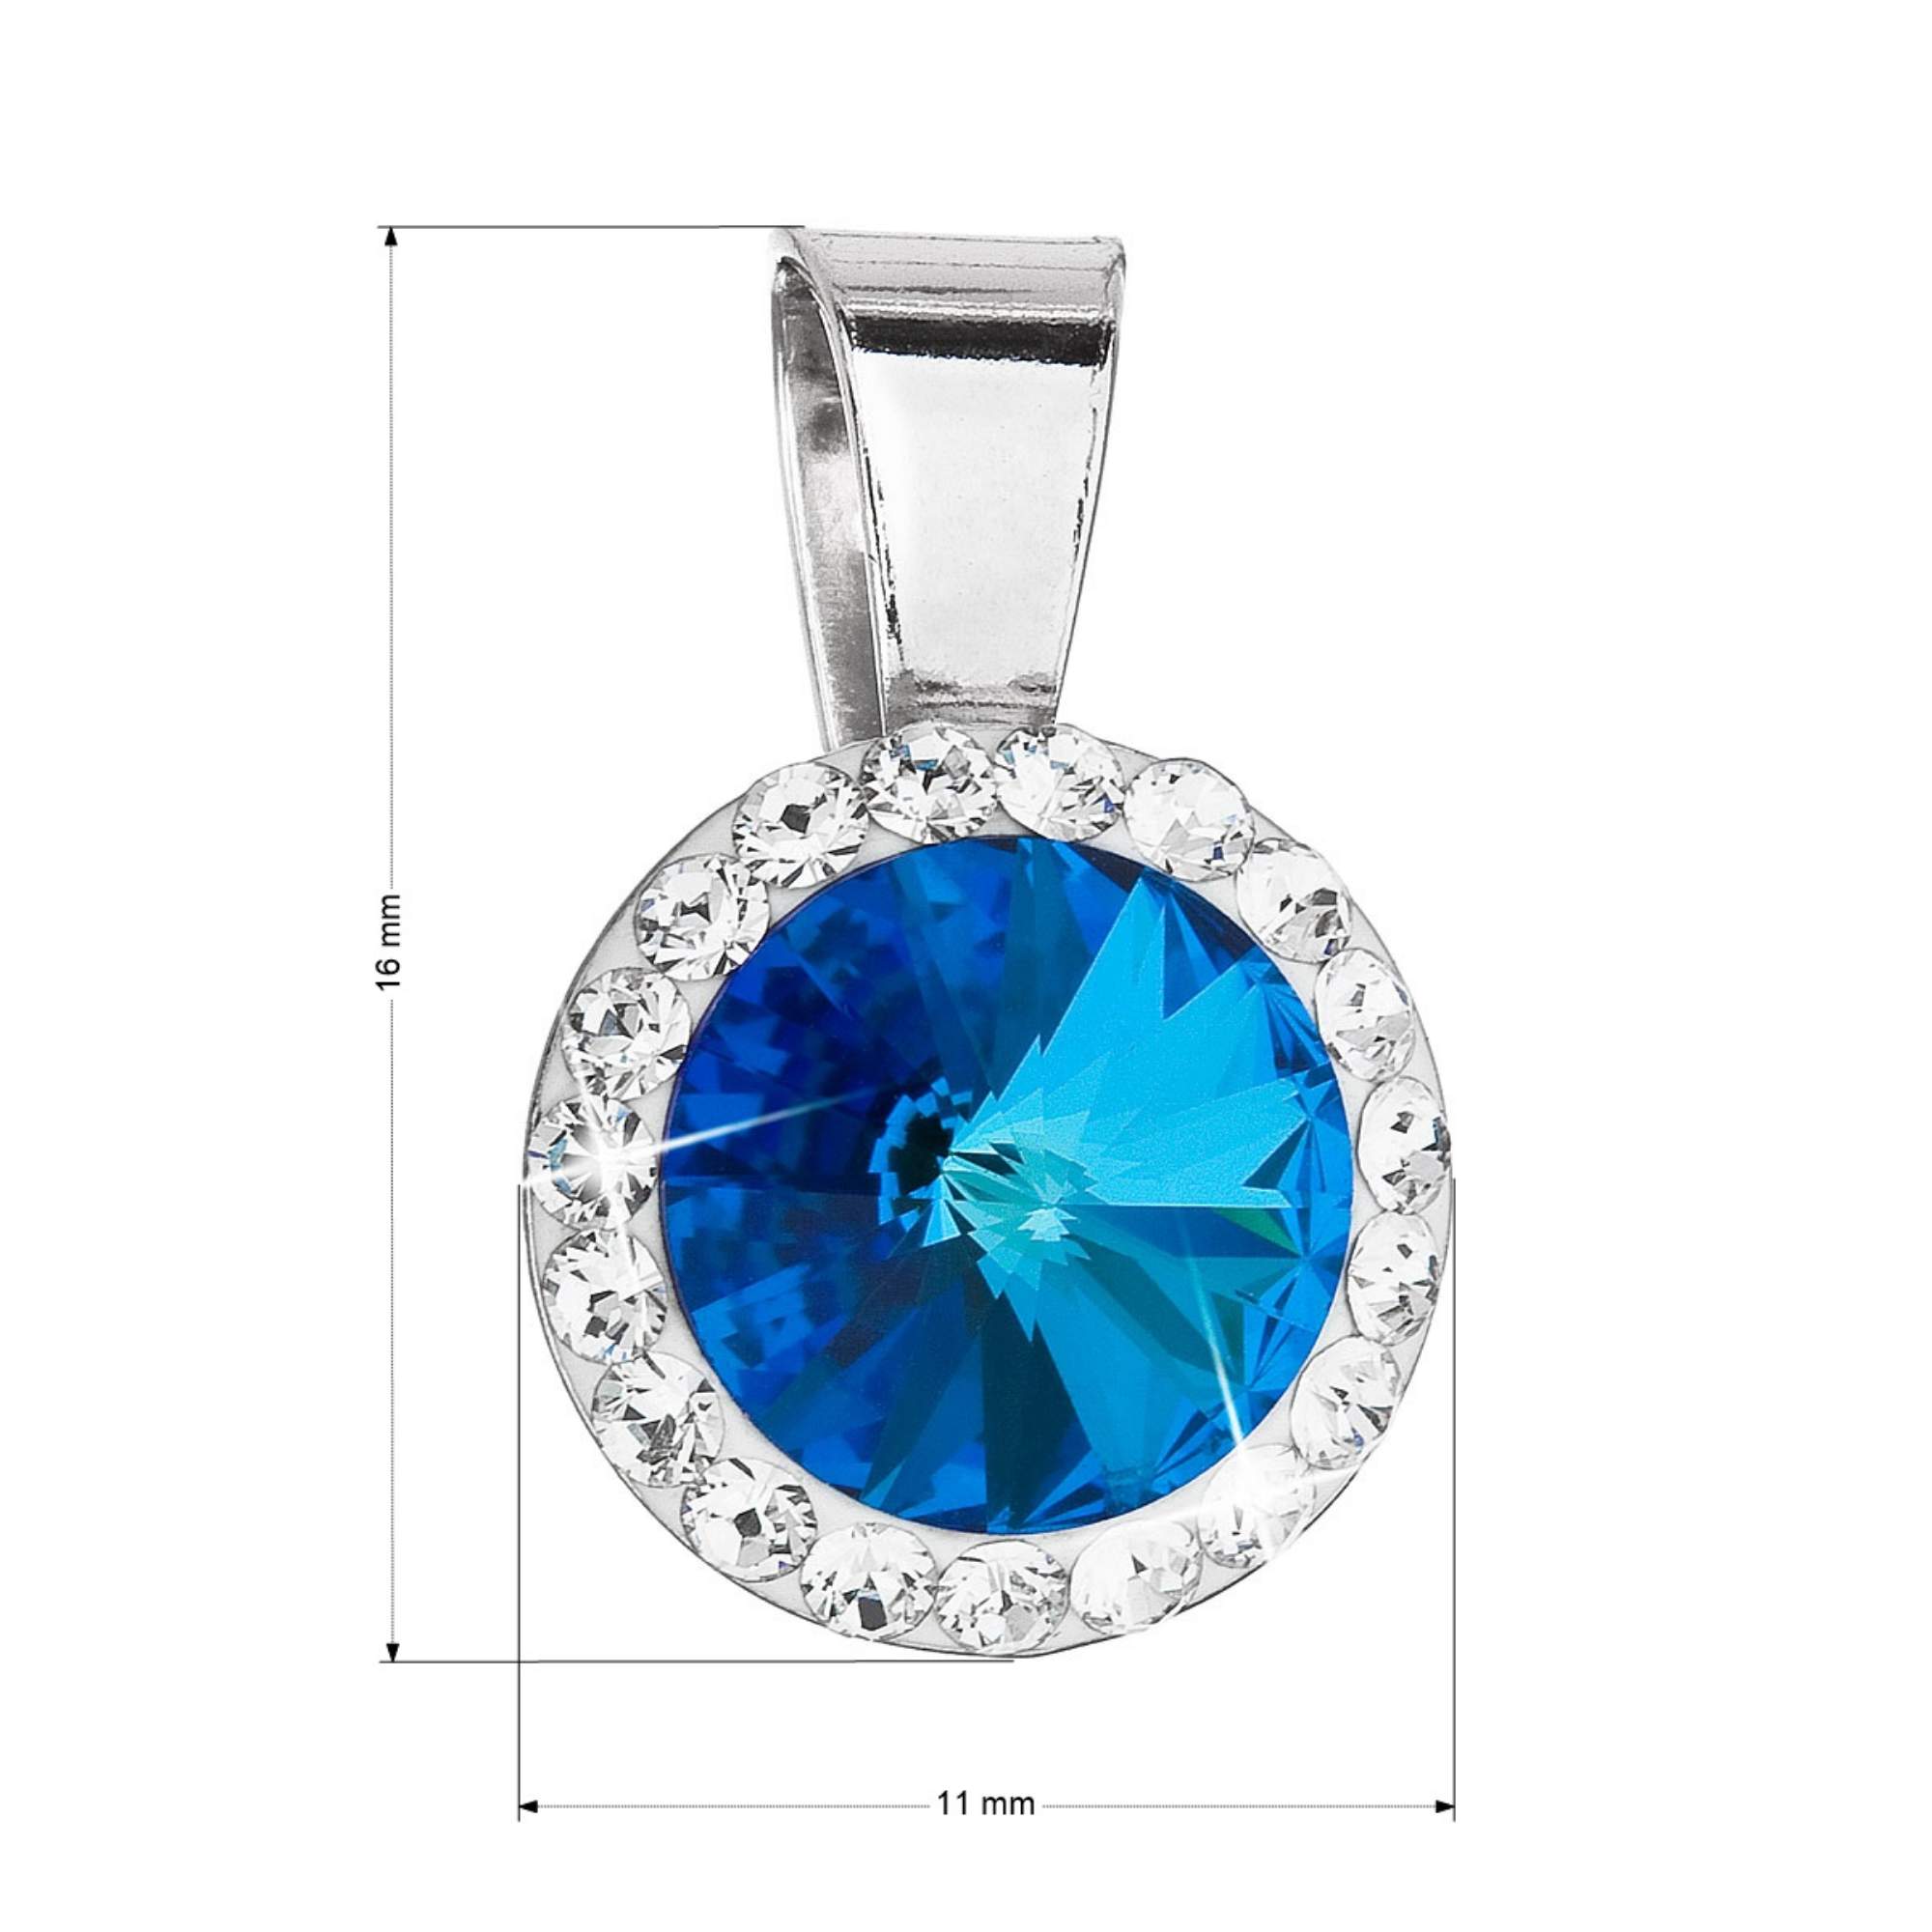 8898-2_strieborny-privesok-s-kristalmi-swarovski-modry-okruhly-34251-5-bermuda-blue.jpg